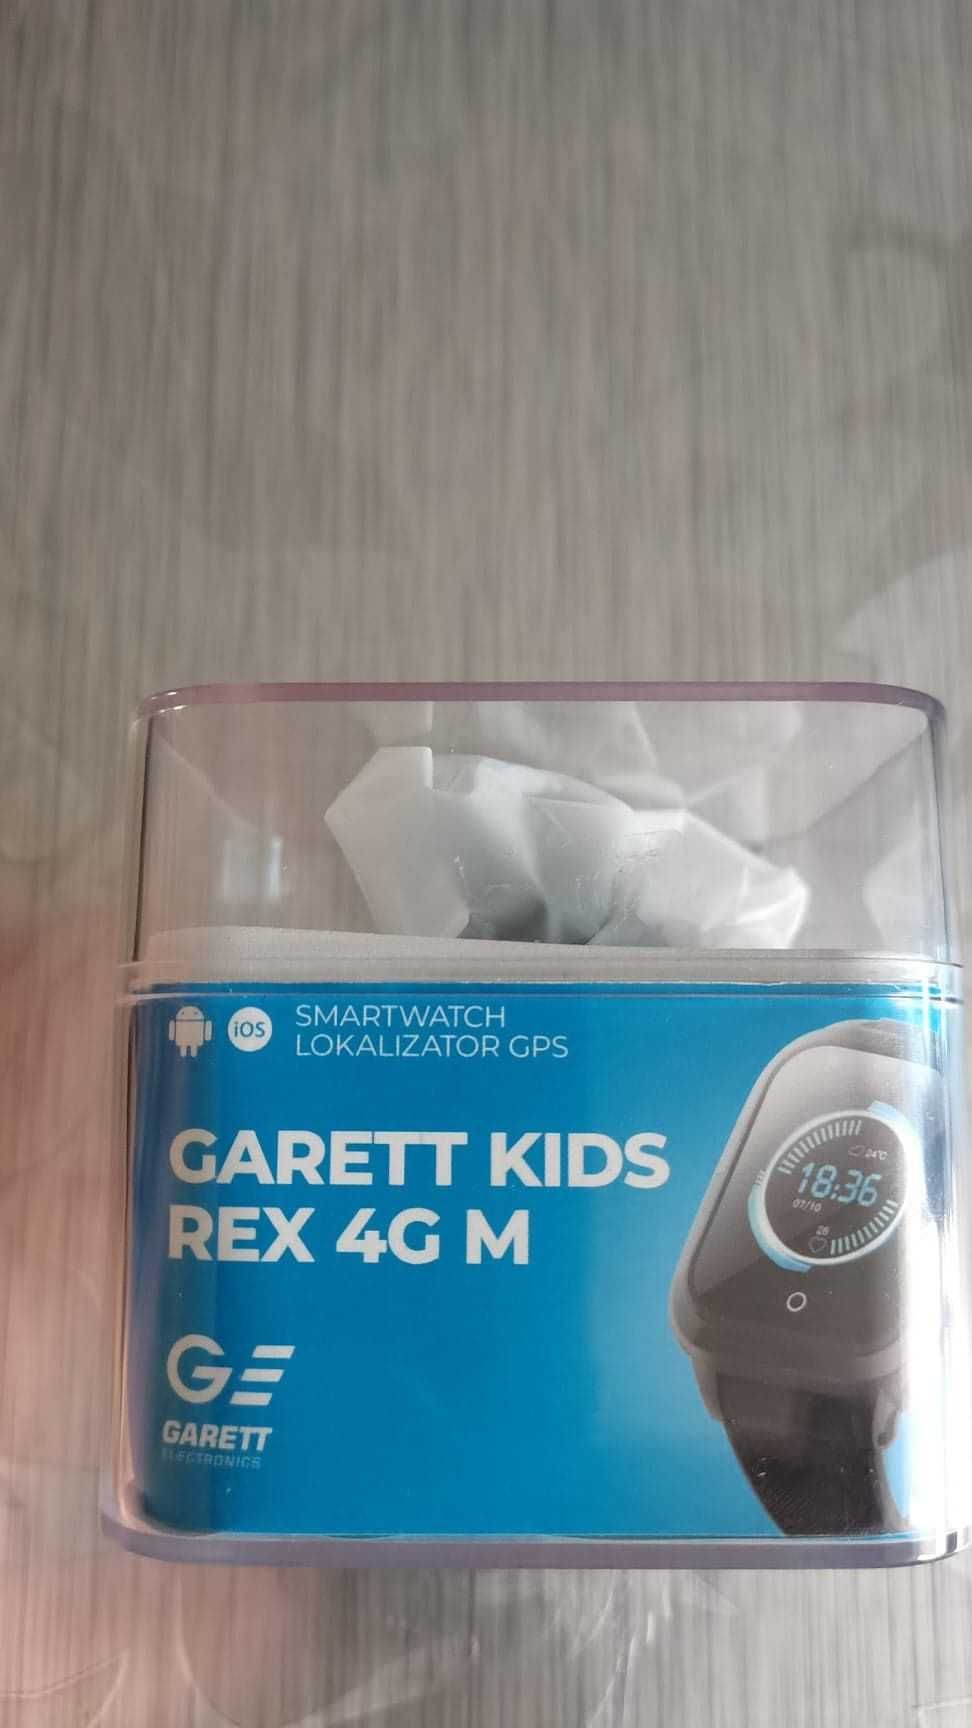 Nowy zegarek SMARTWATCH GARETT KIDS REX 4G M - niewyciągany z pudełka